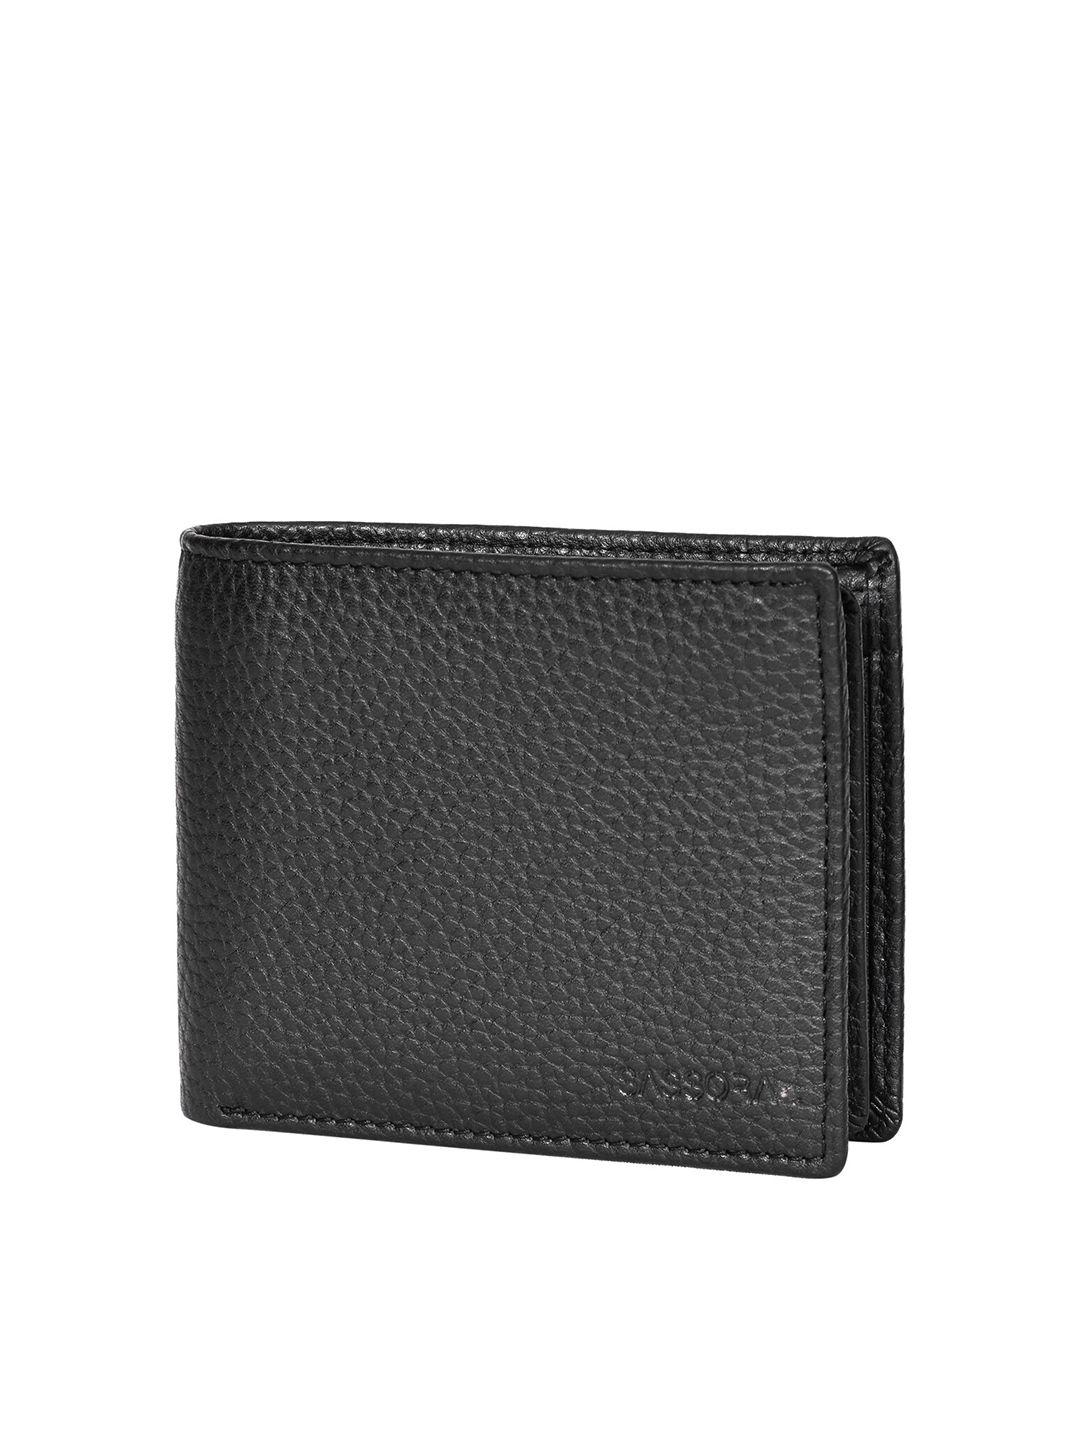 sassora men genuine leather two fold wallet